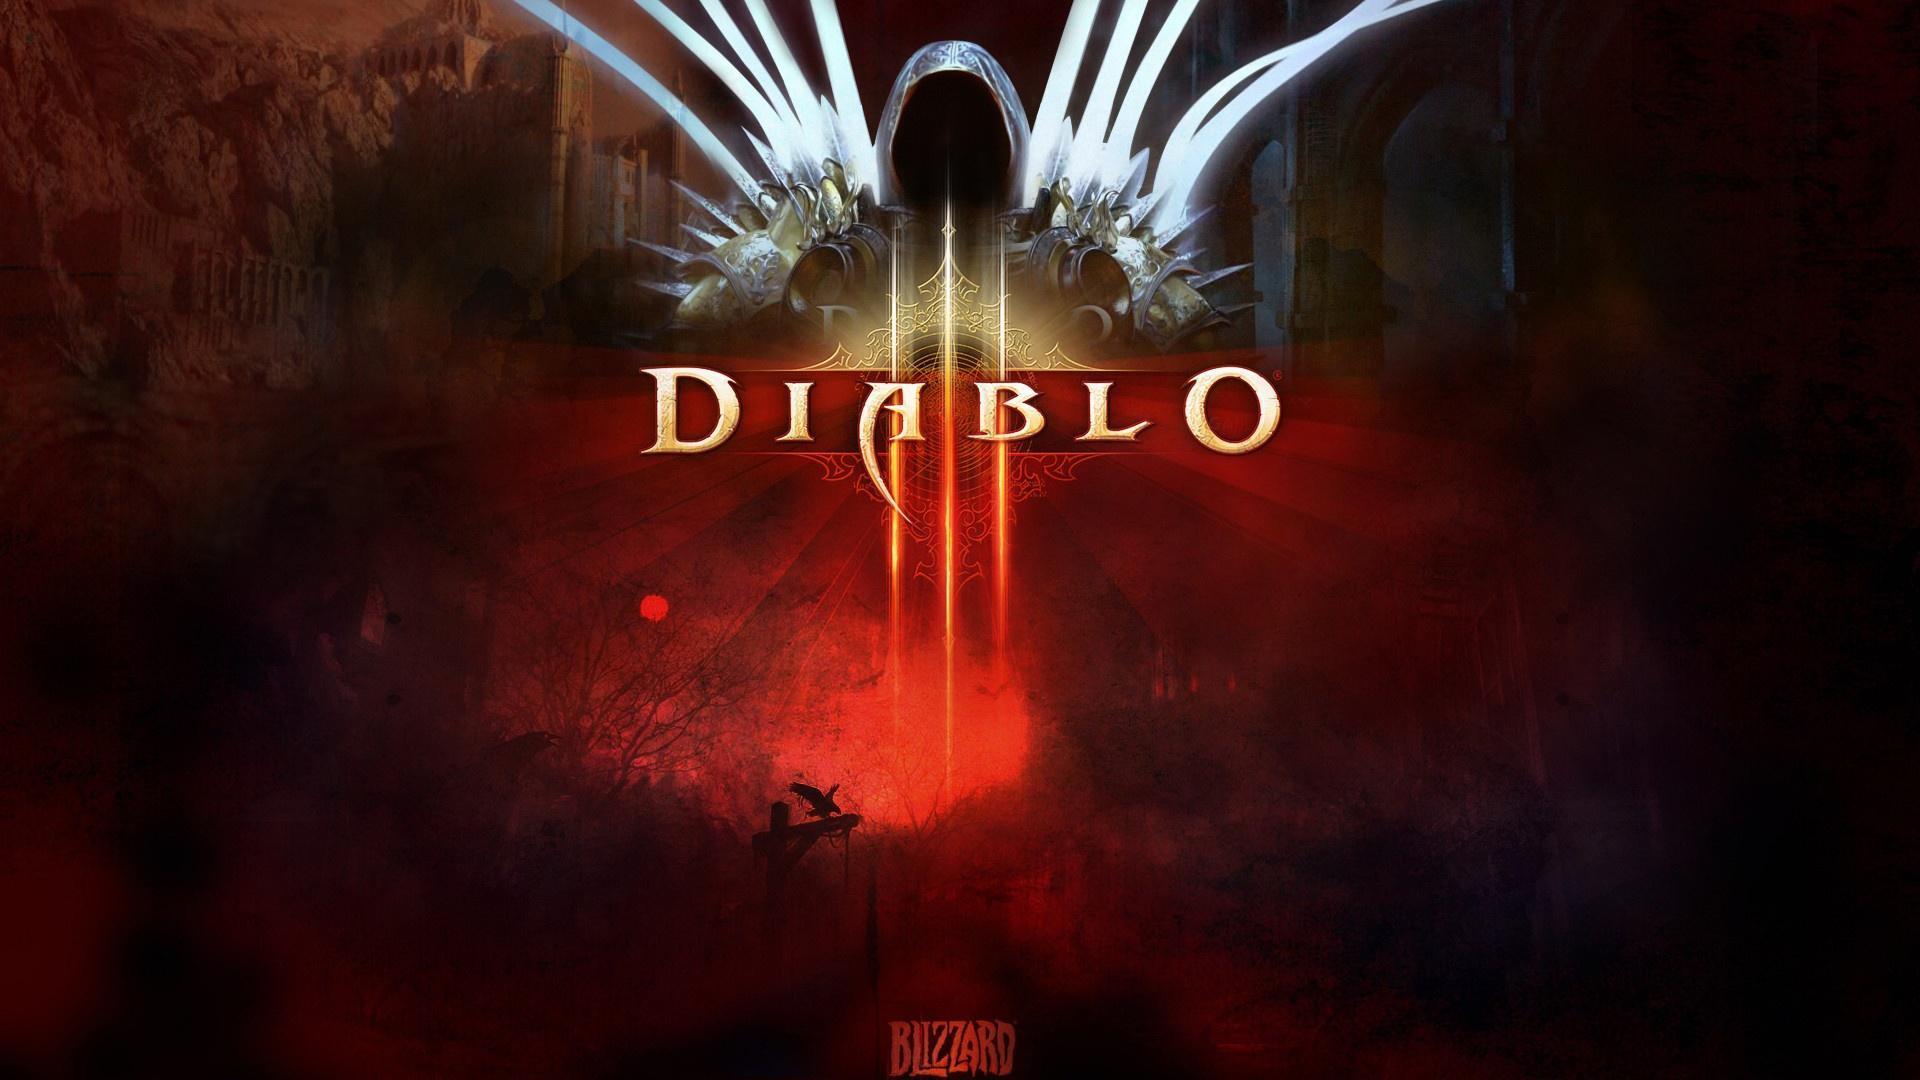 Diablo 3 PS3 Game Wallpaper. Frenzia